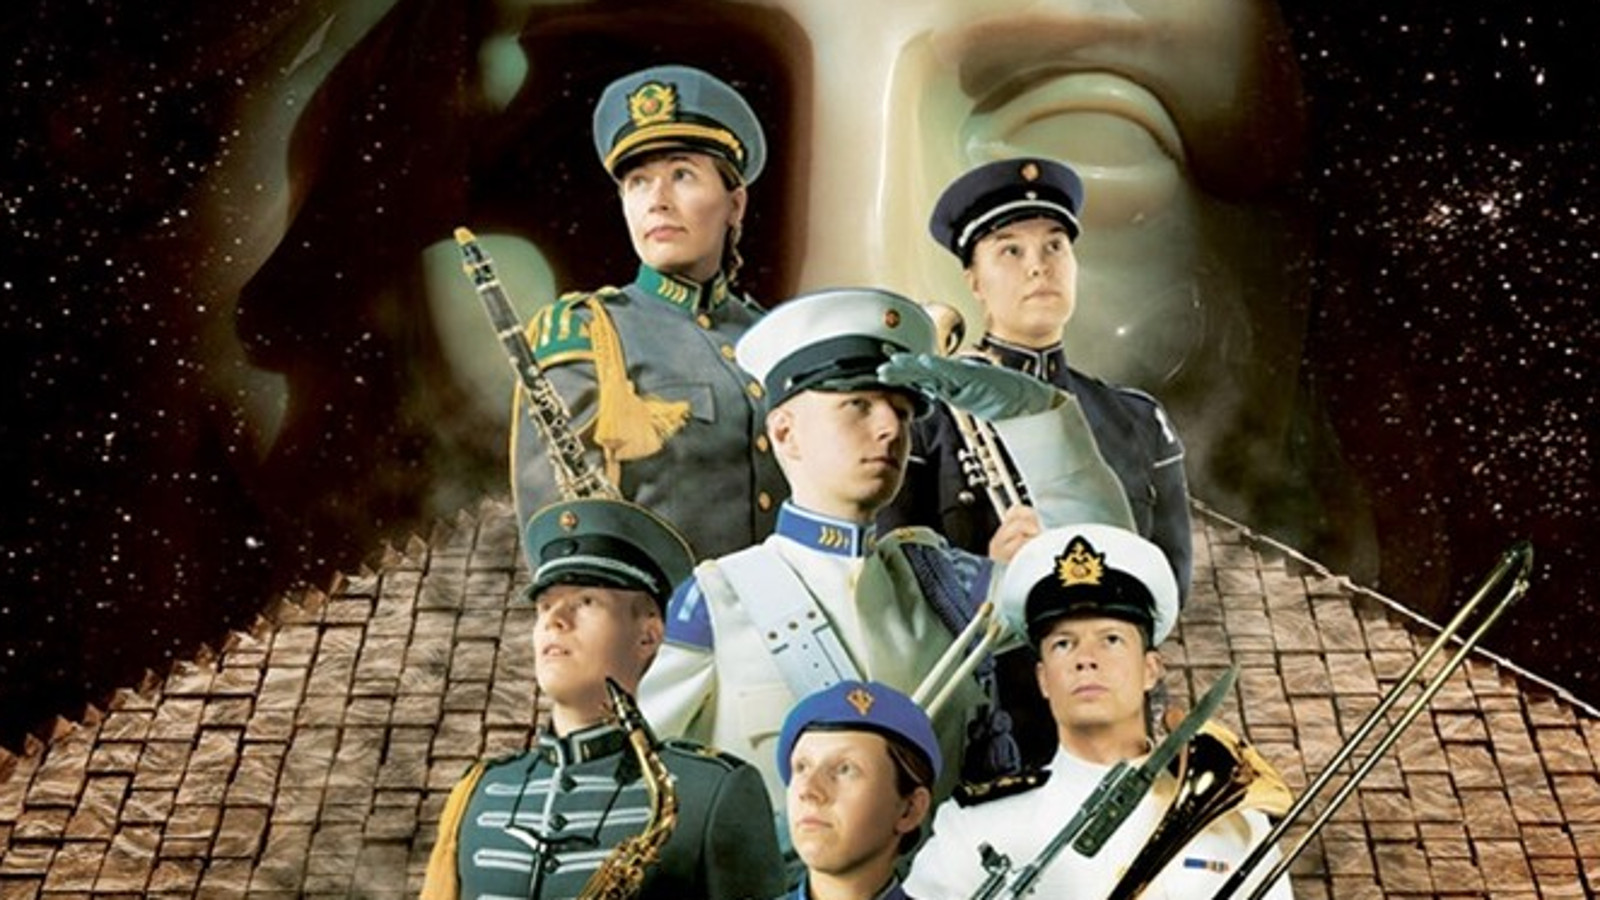 Kuvassa on seitsemän sotilassoittajaa kolmen rivin ryhmässä ja heillä on harmaita tai valkoisia takkeja sekä lakit sekä puhallinsoittimia kädessään. Taustalla on alhaalla tiilikattoa ja takana vaalean patsaan kasvot.   